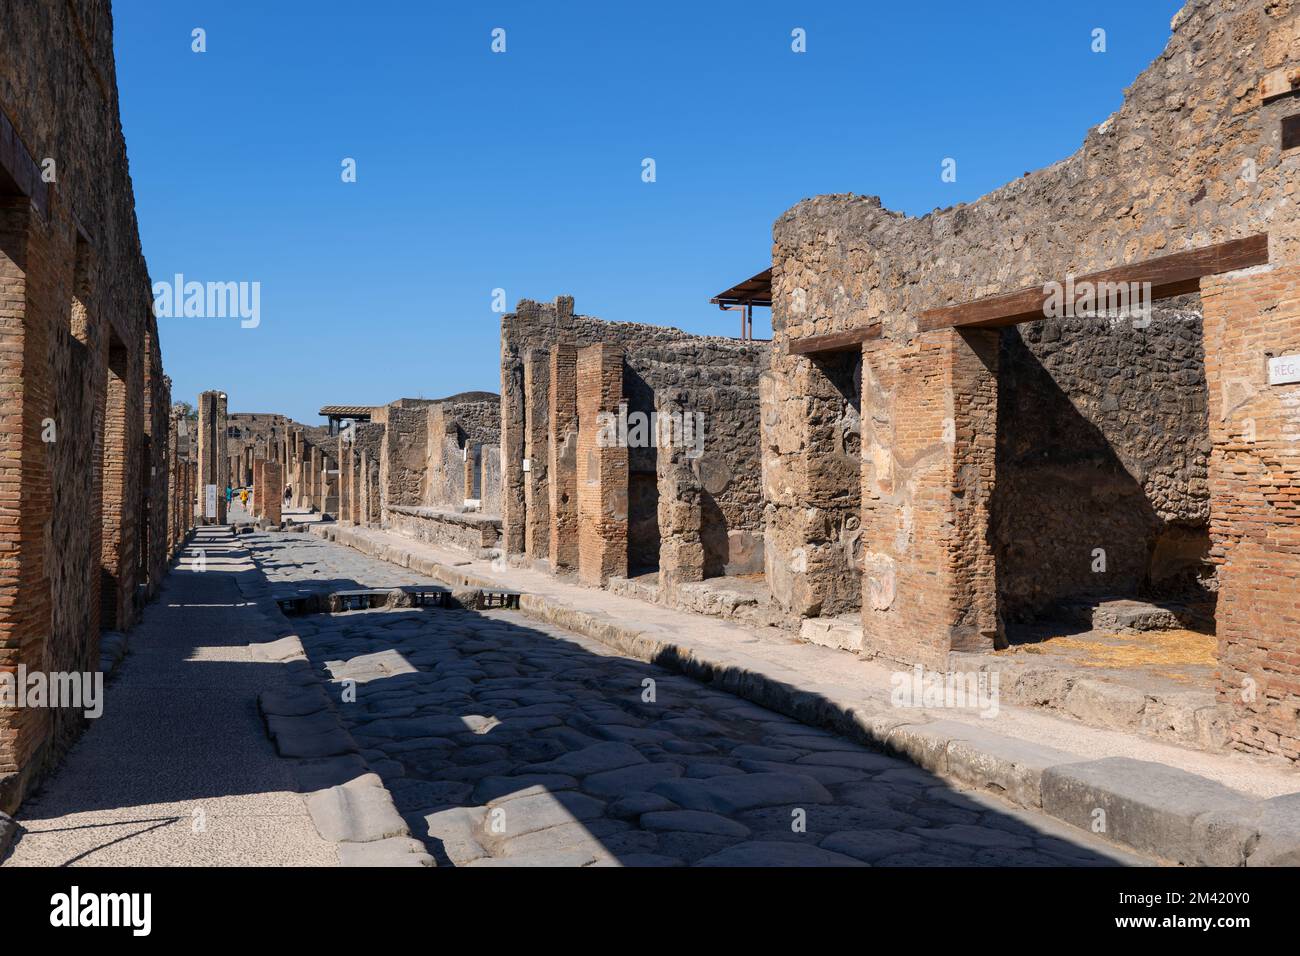 Via dell'Abbondanza rue à Pompéi, une ancienne ville romaine à Pompéi, Campanie, Italie Banque D'Images